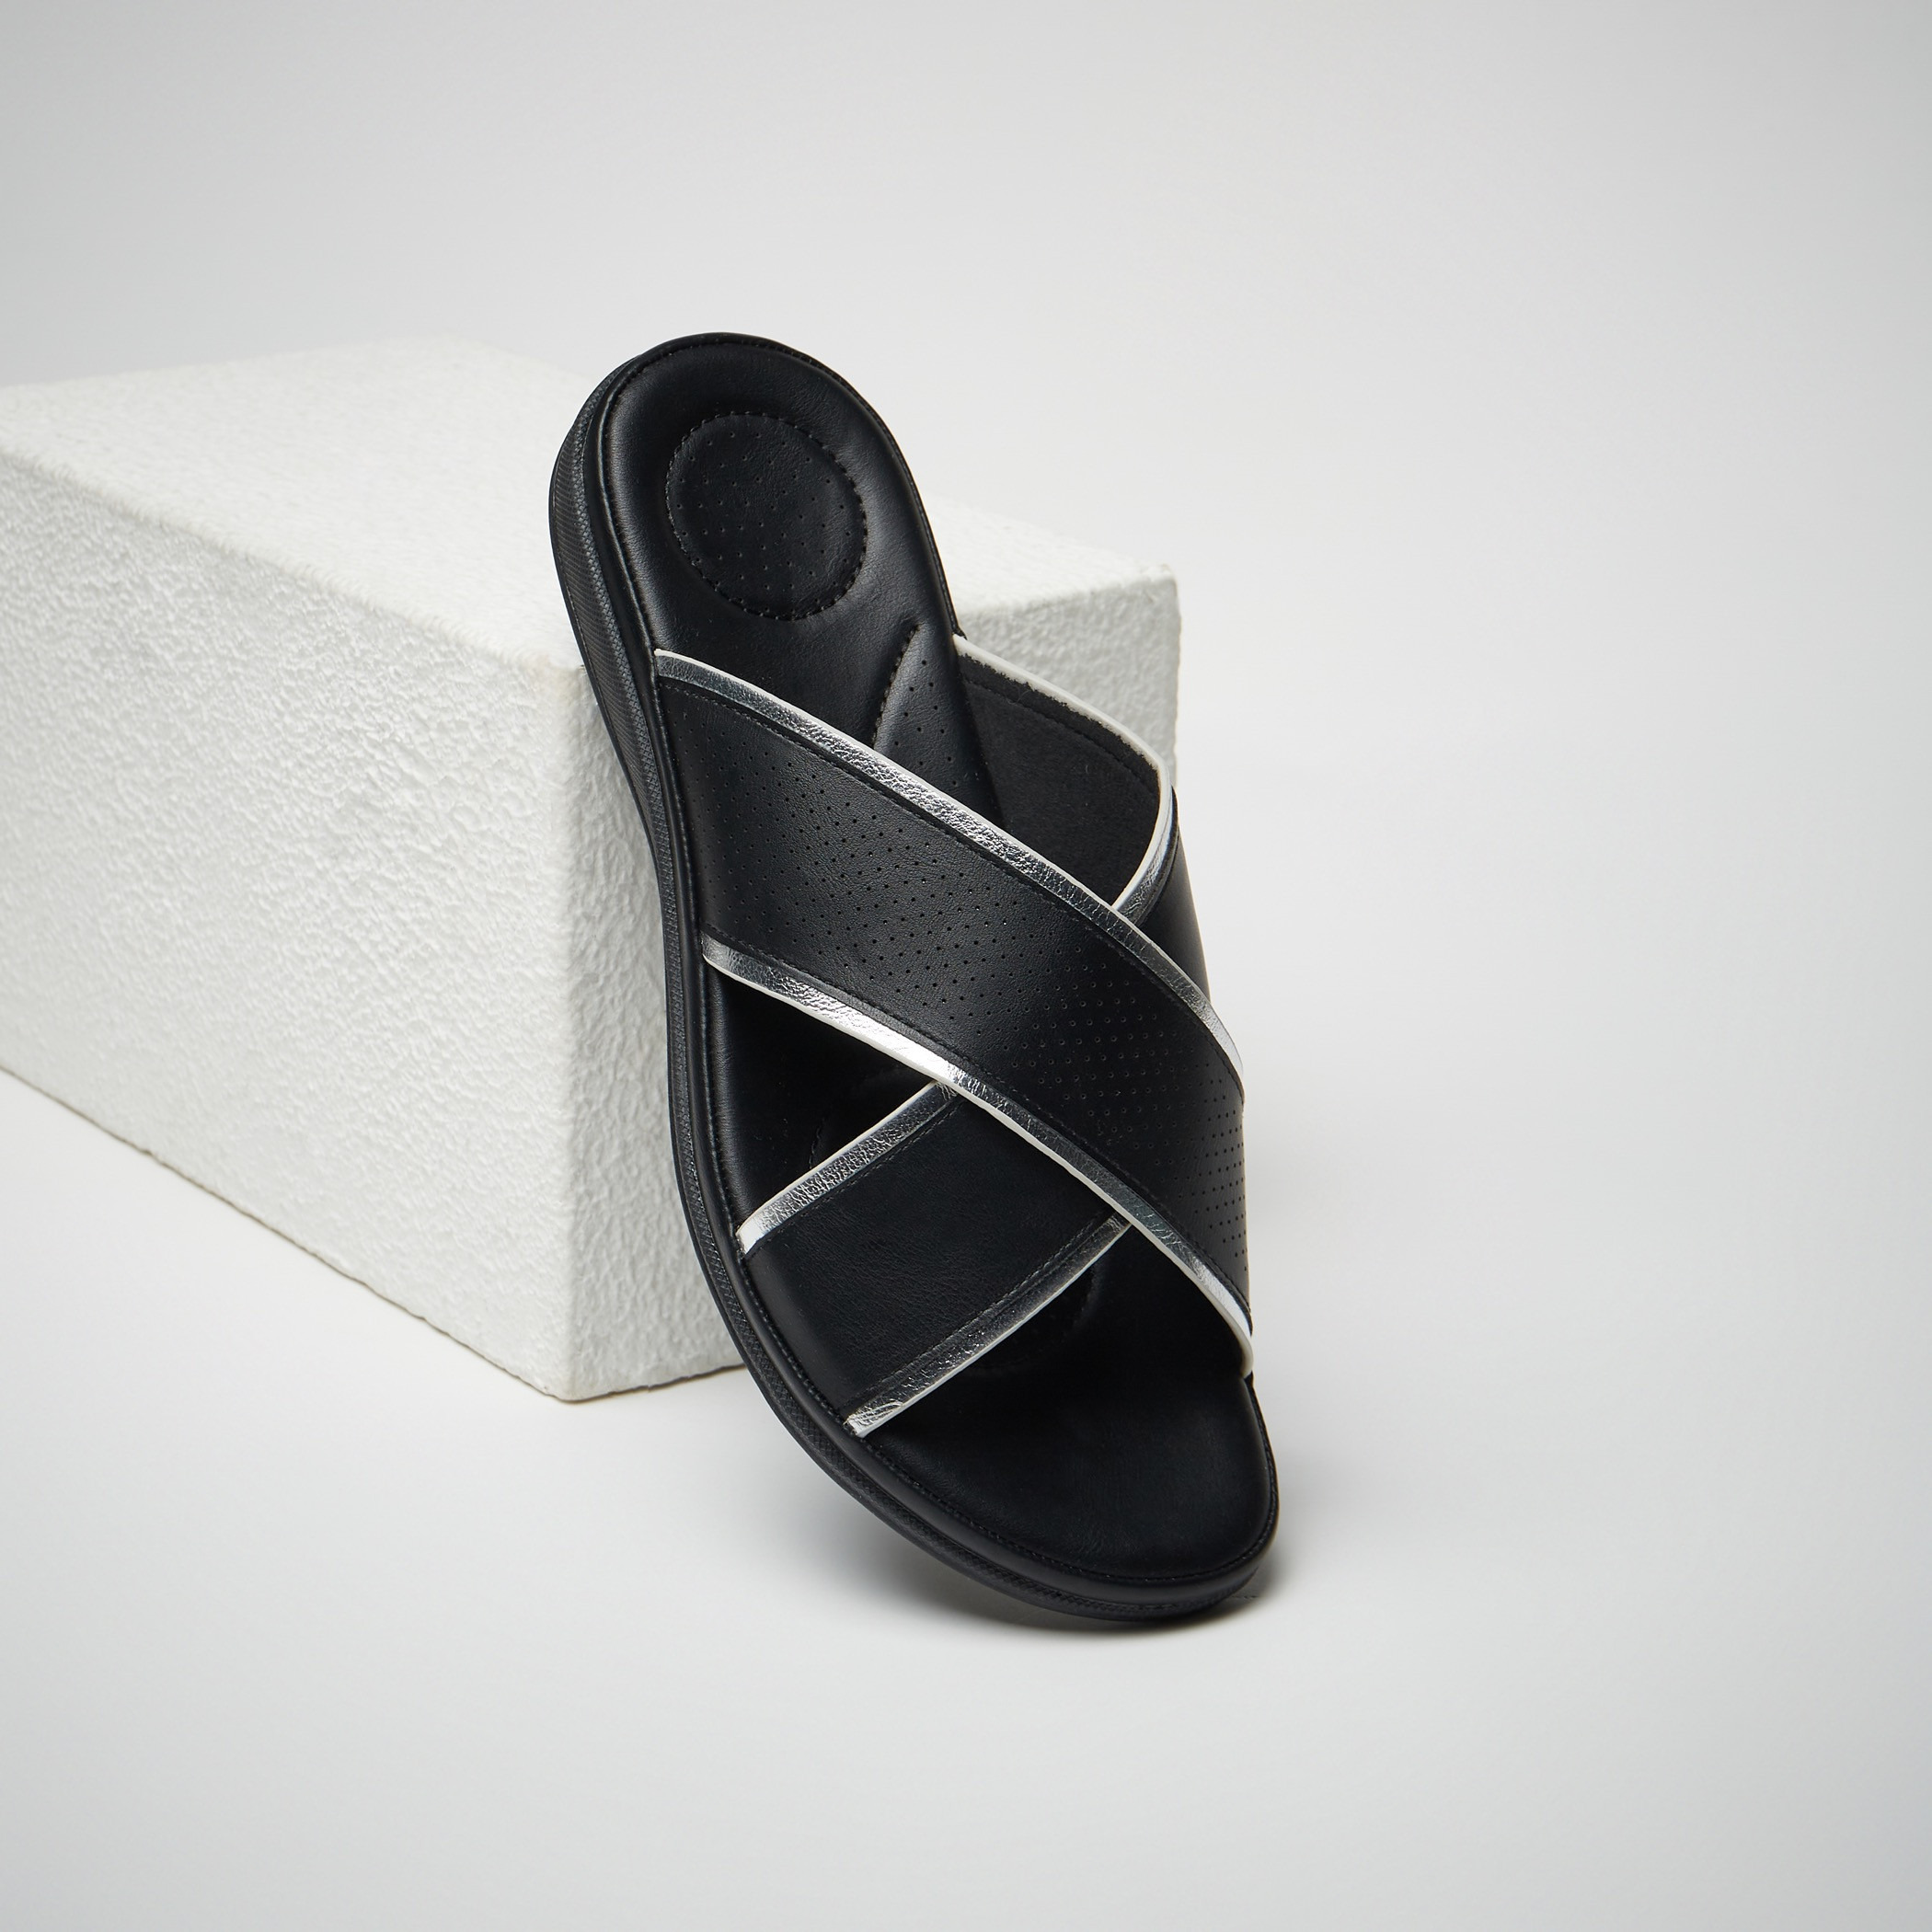 Shop Textured Slip-On Cross Strap Sandals Online | Max UAE